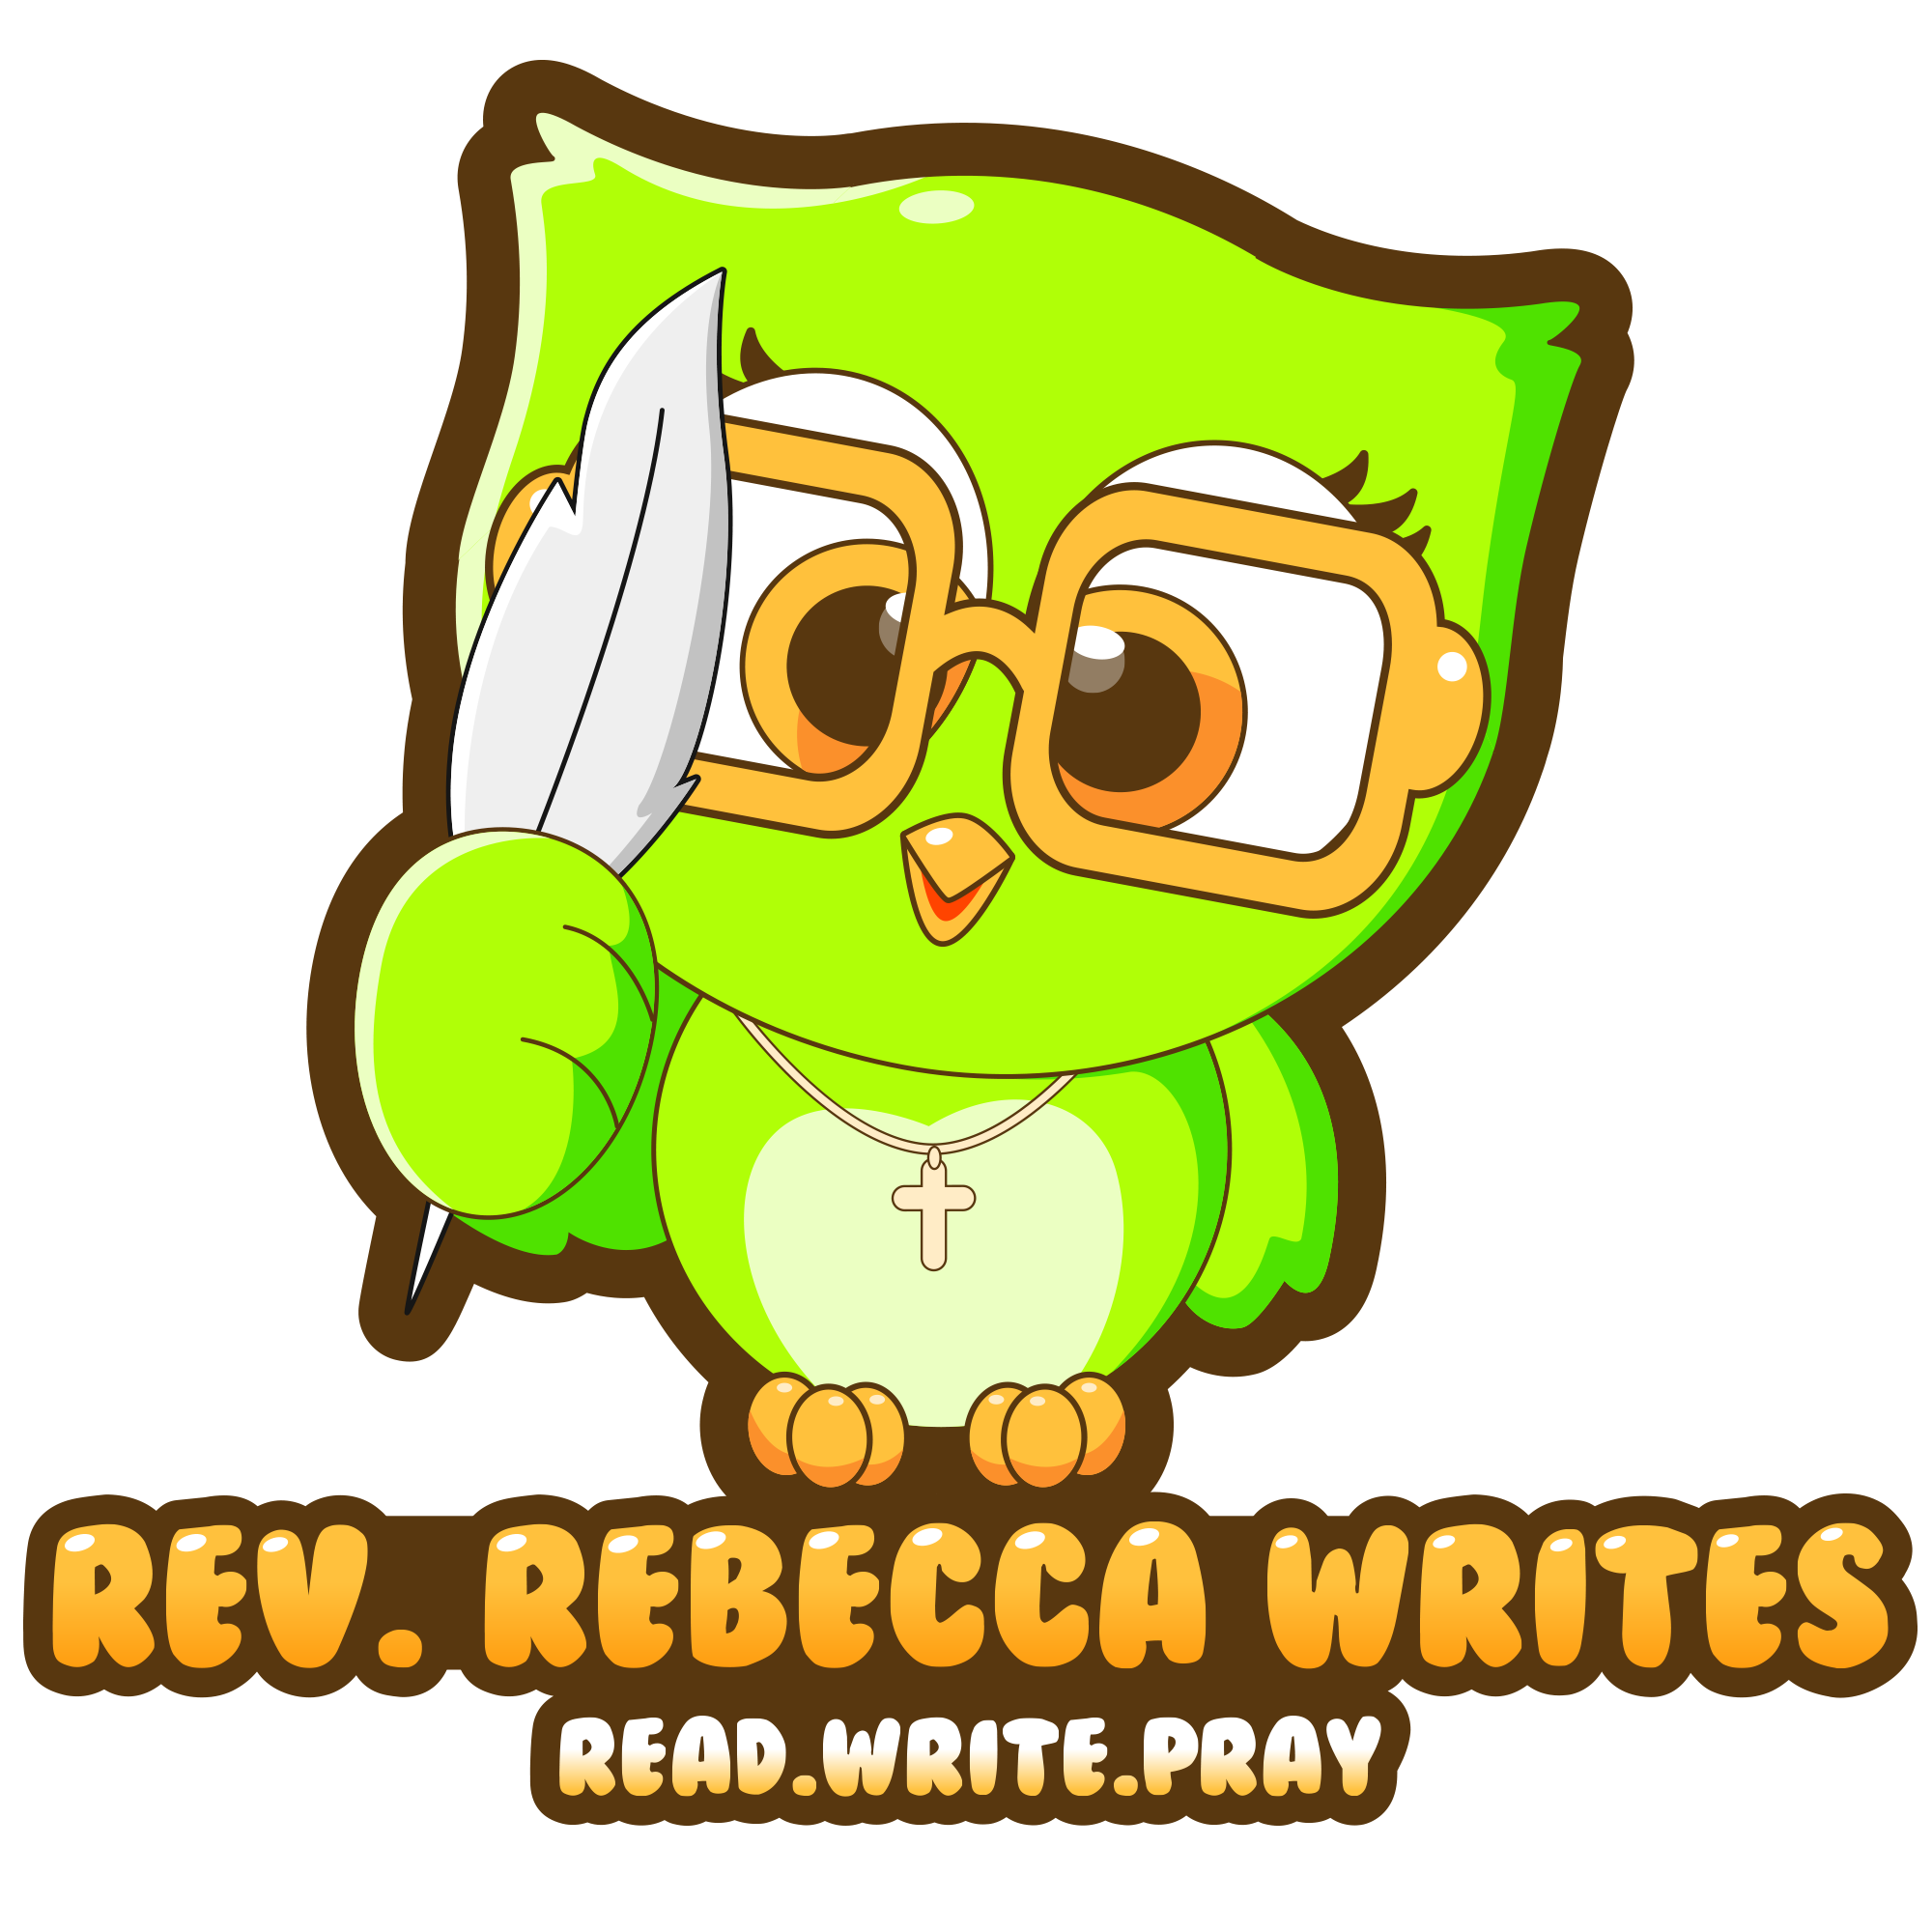 A green owl logo for Rev. Rebecca Writes